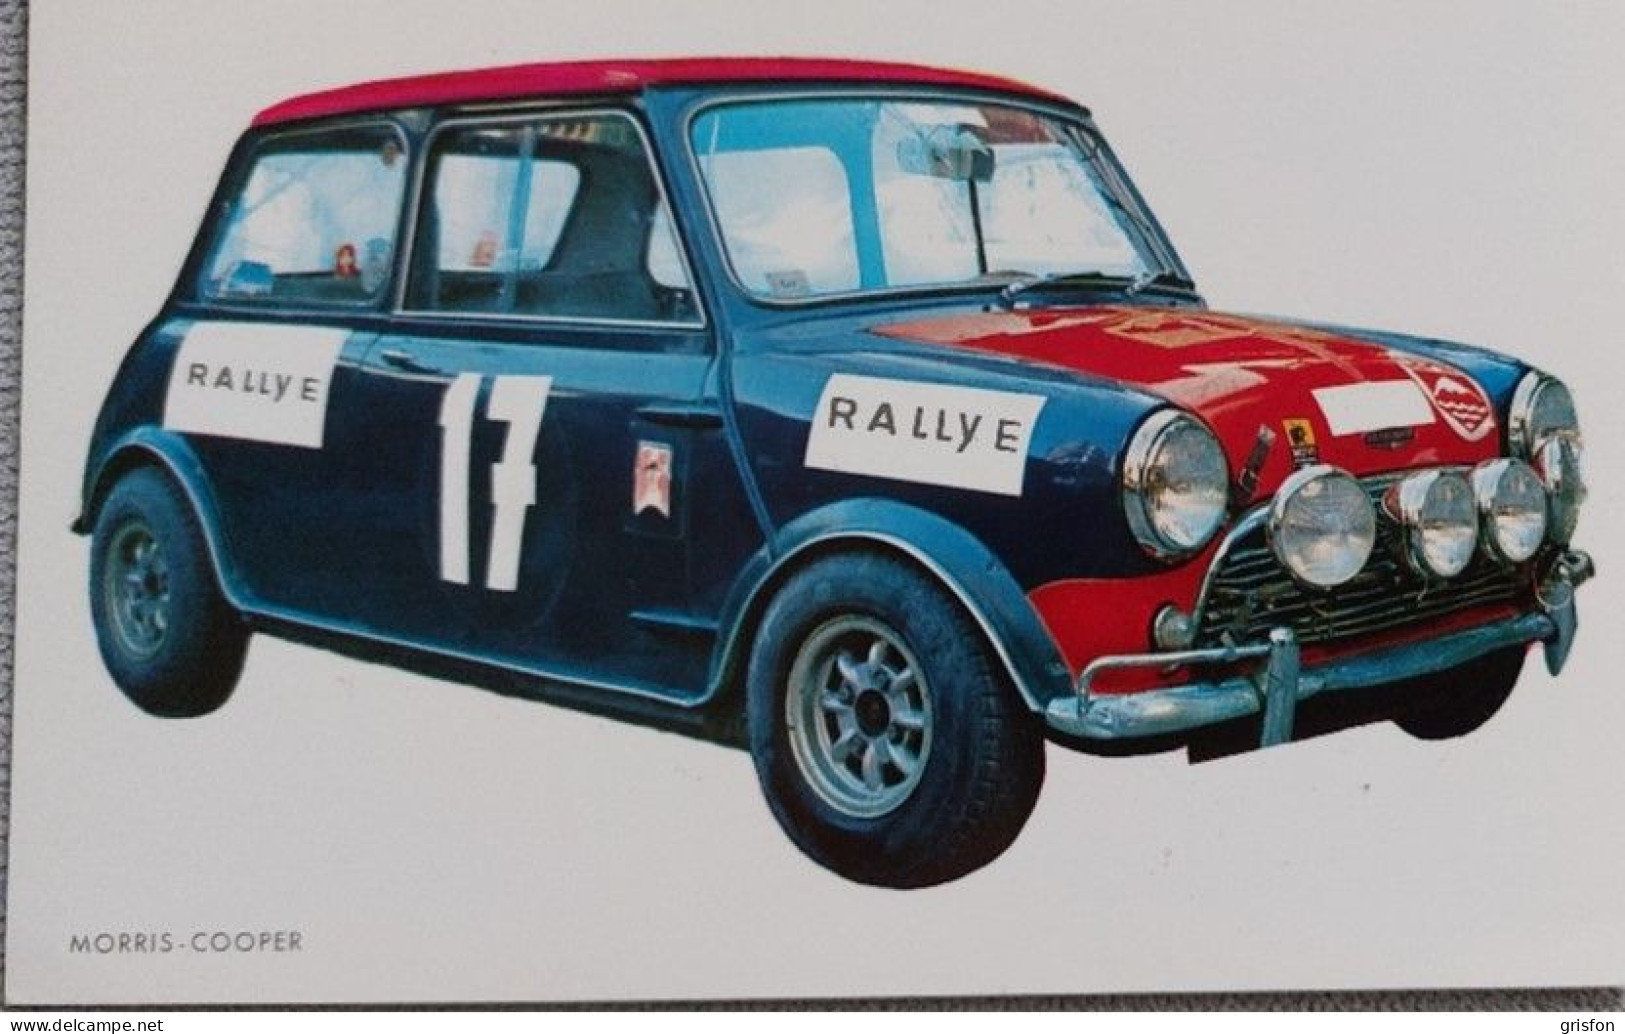 Morris Cooper - Rallye